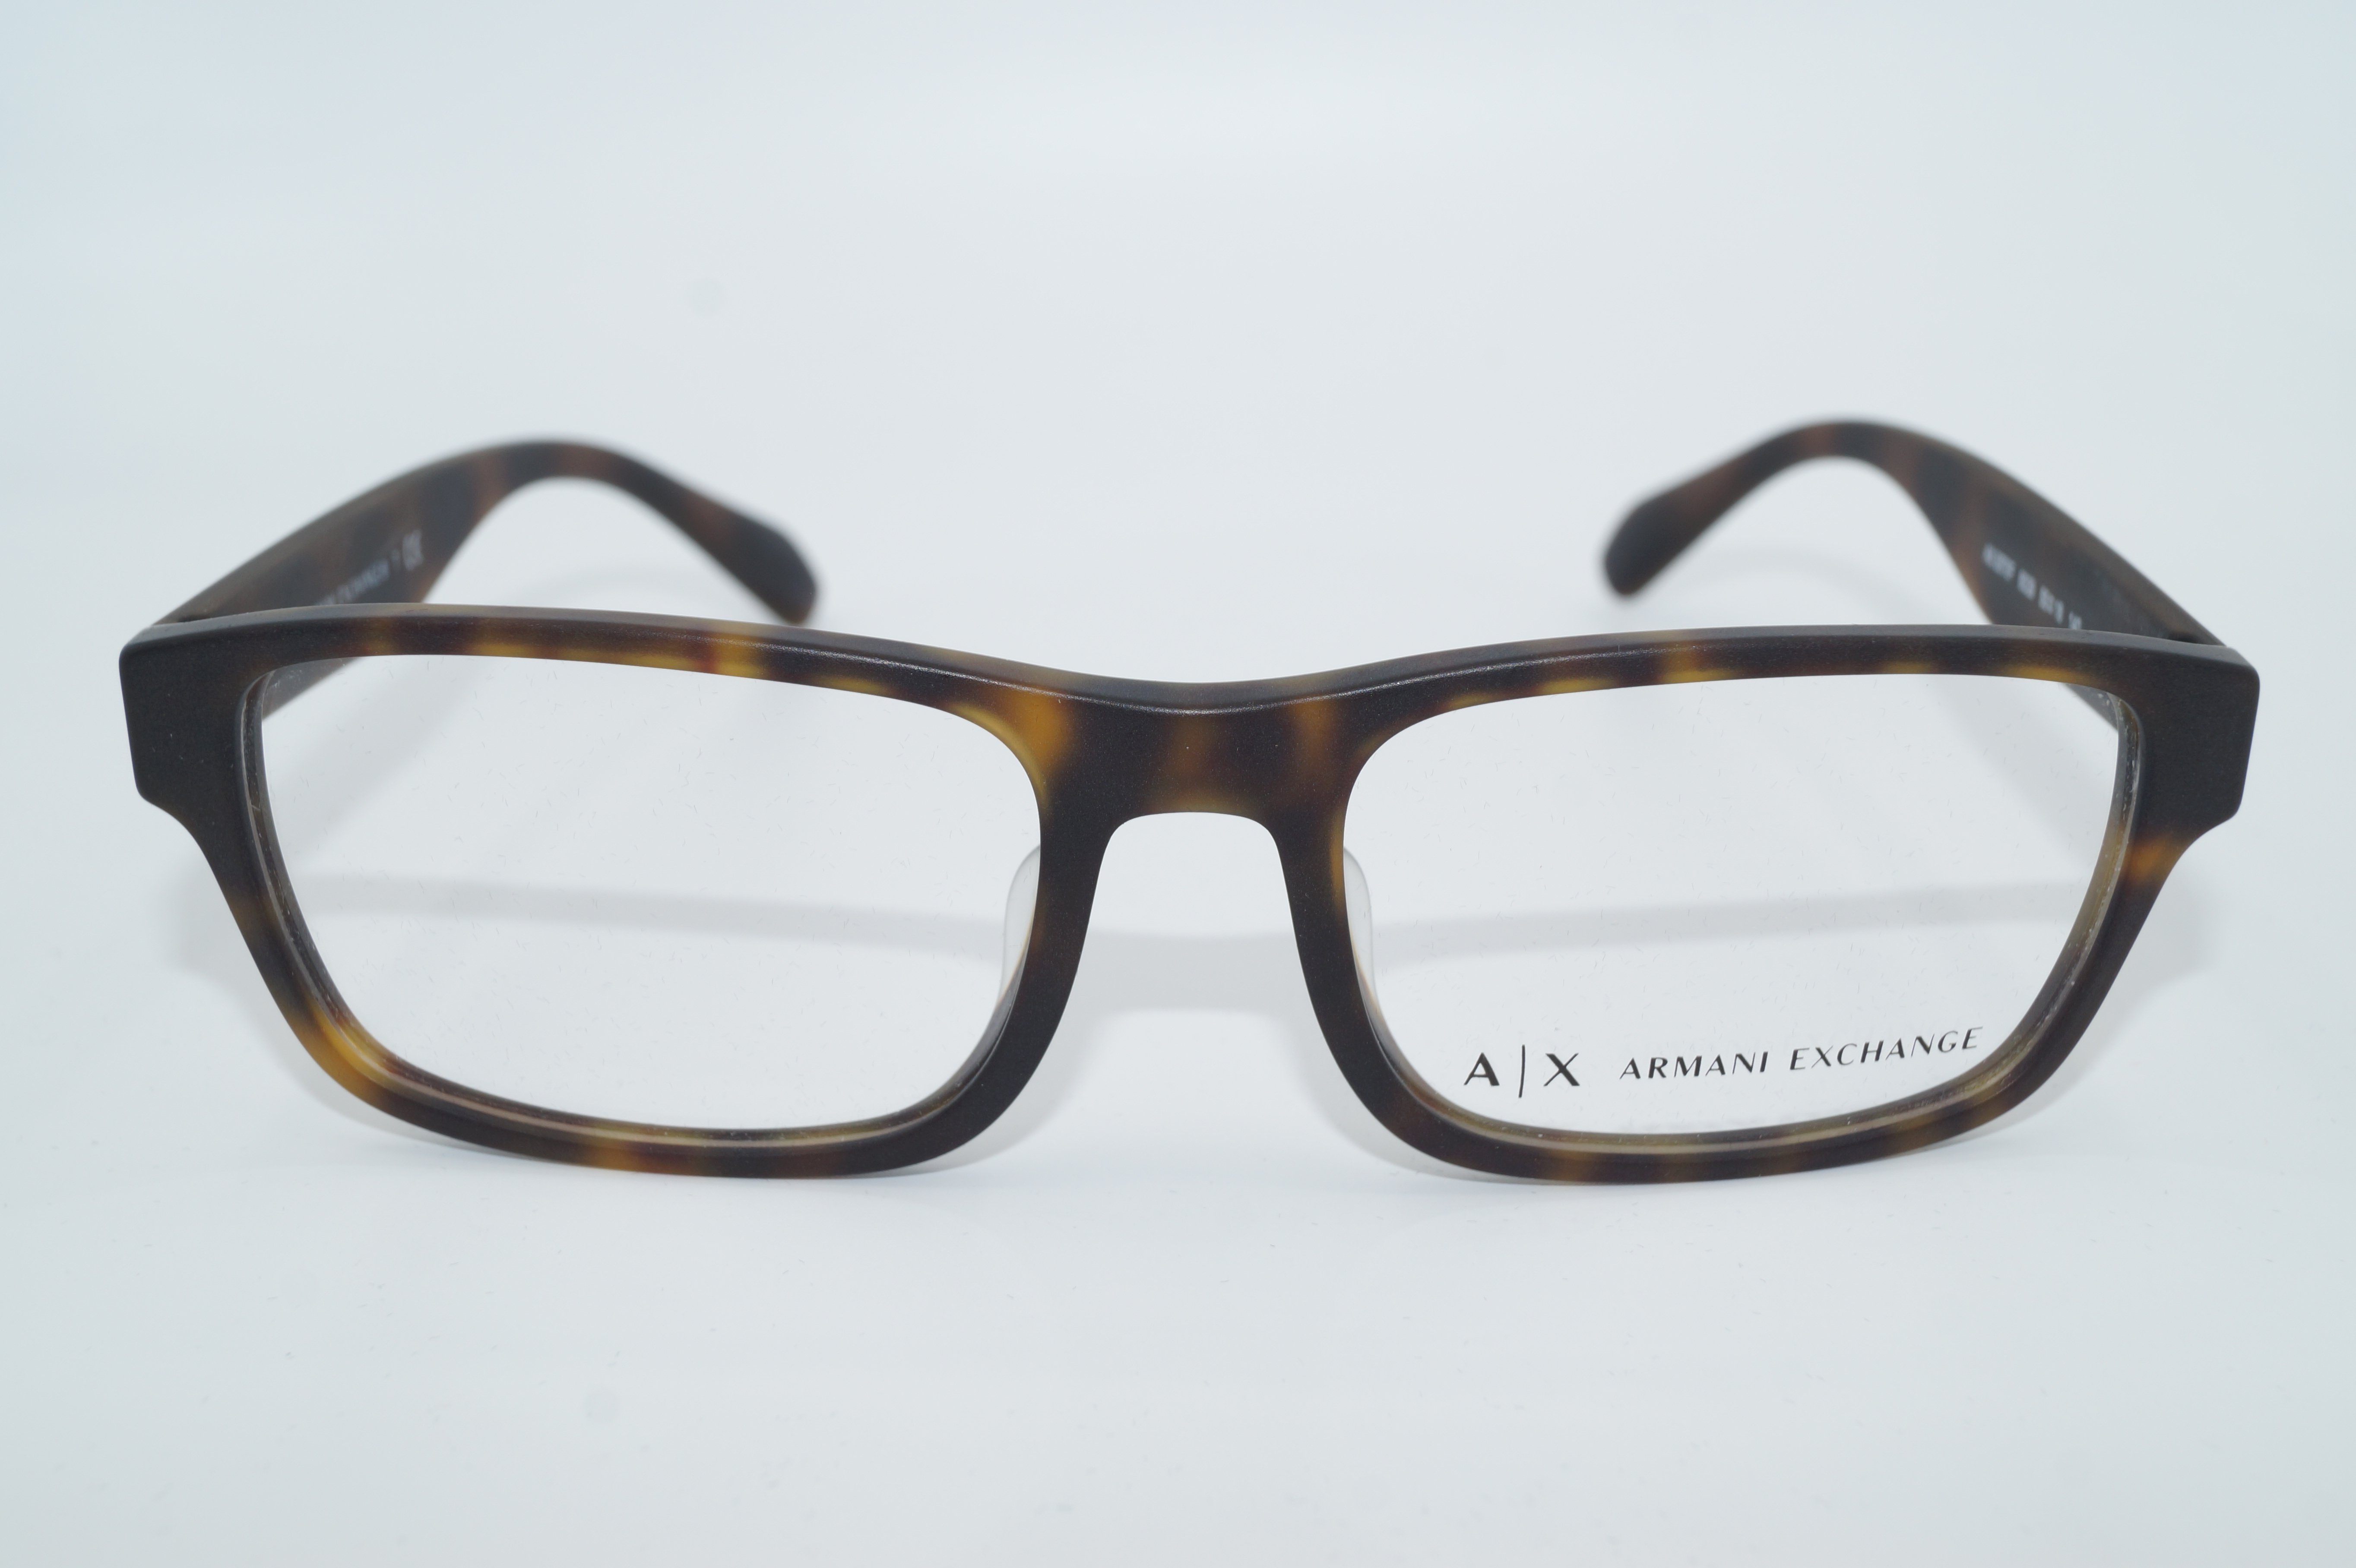 Brille ARMANI AX Brillenfassung Frame Eyeglasses 3070F EXCHANGE ARMANI 8029 Gr.55 EXCHANGE